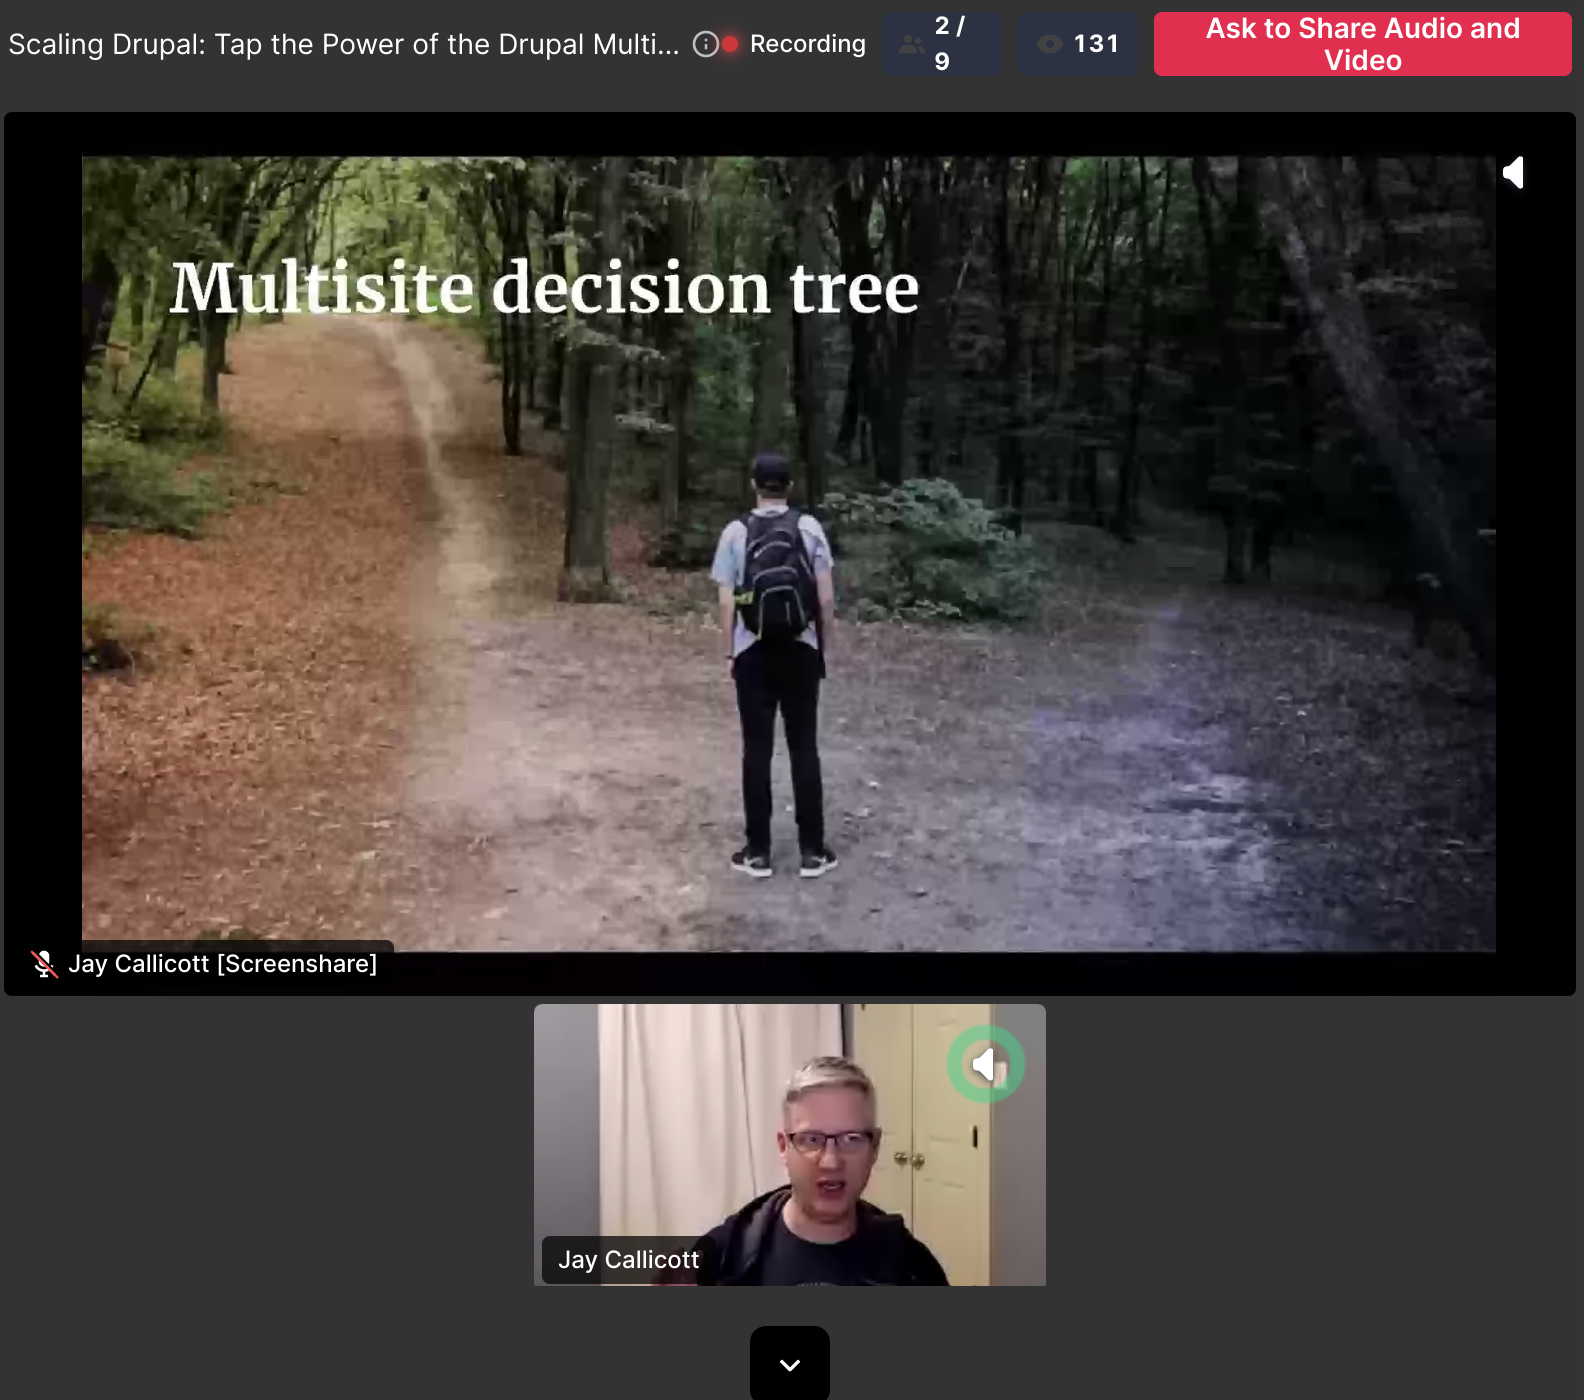 Drupal multisite presentation slide shows a decision tree 